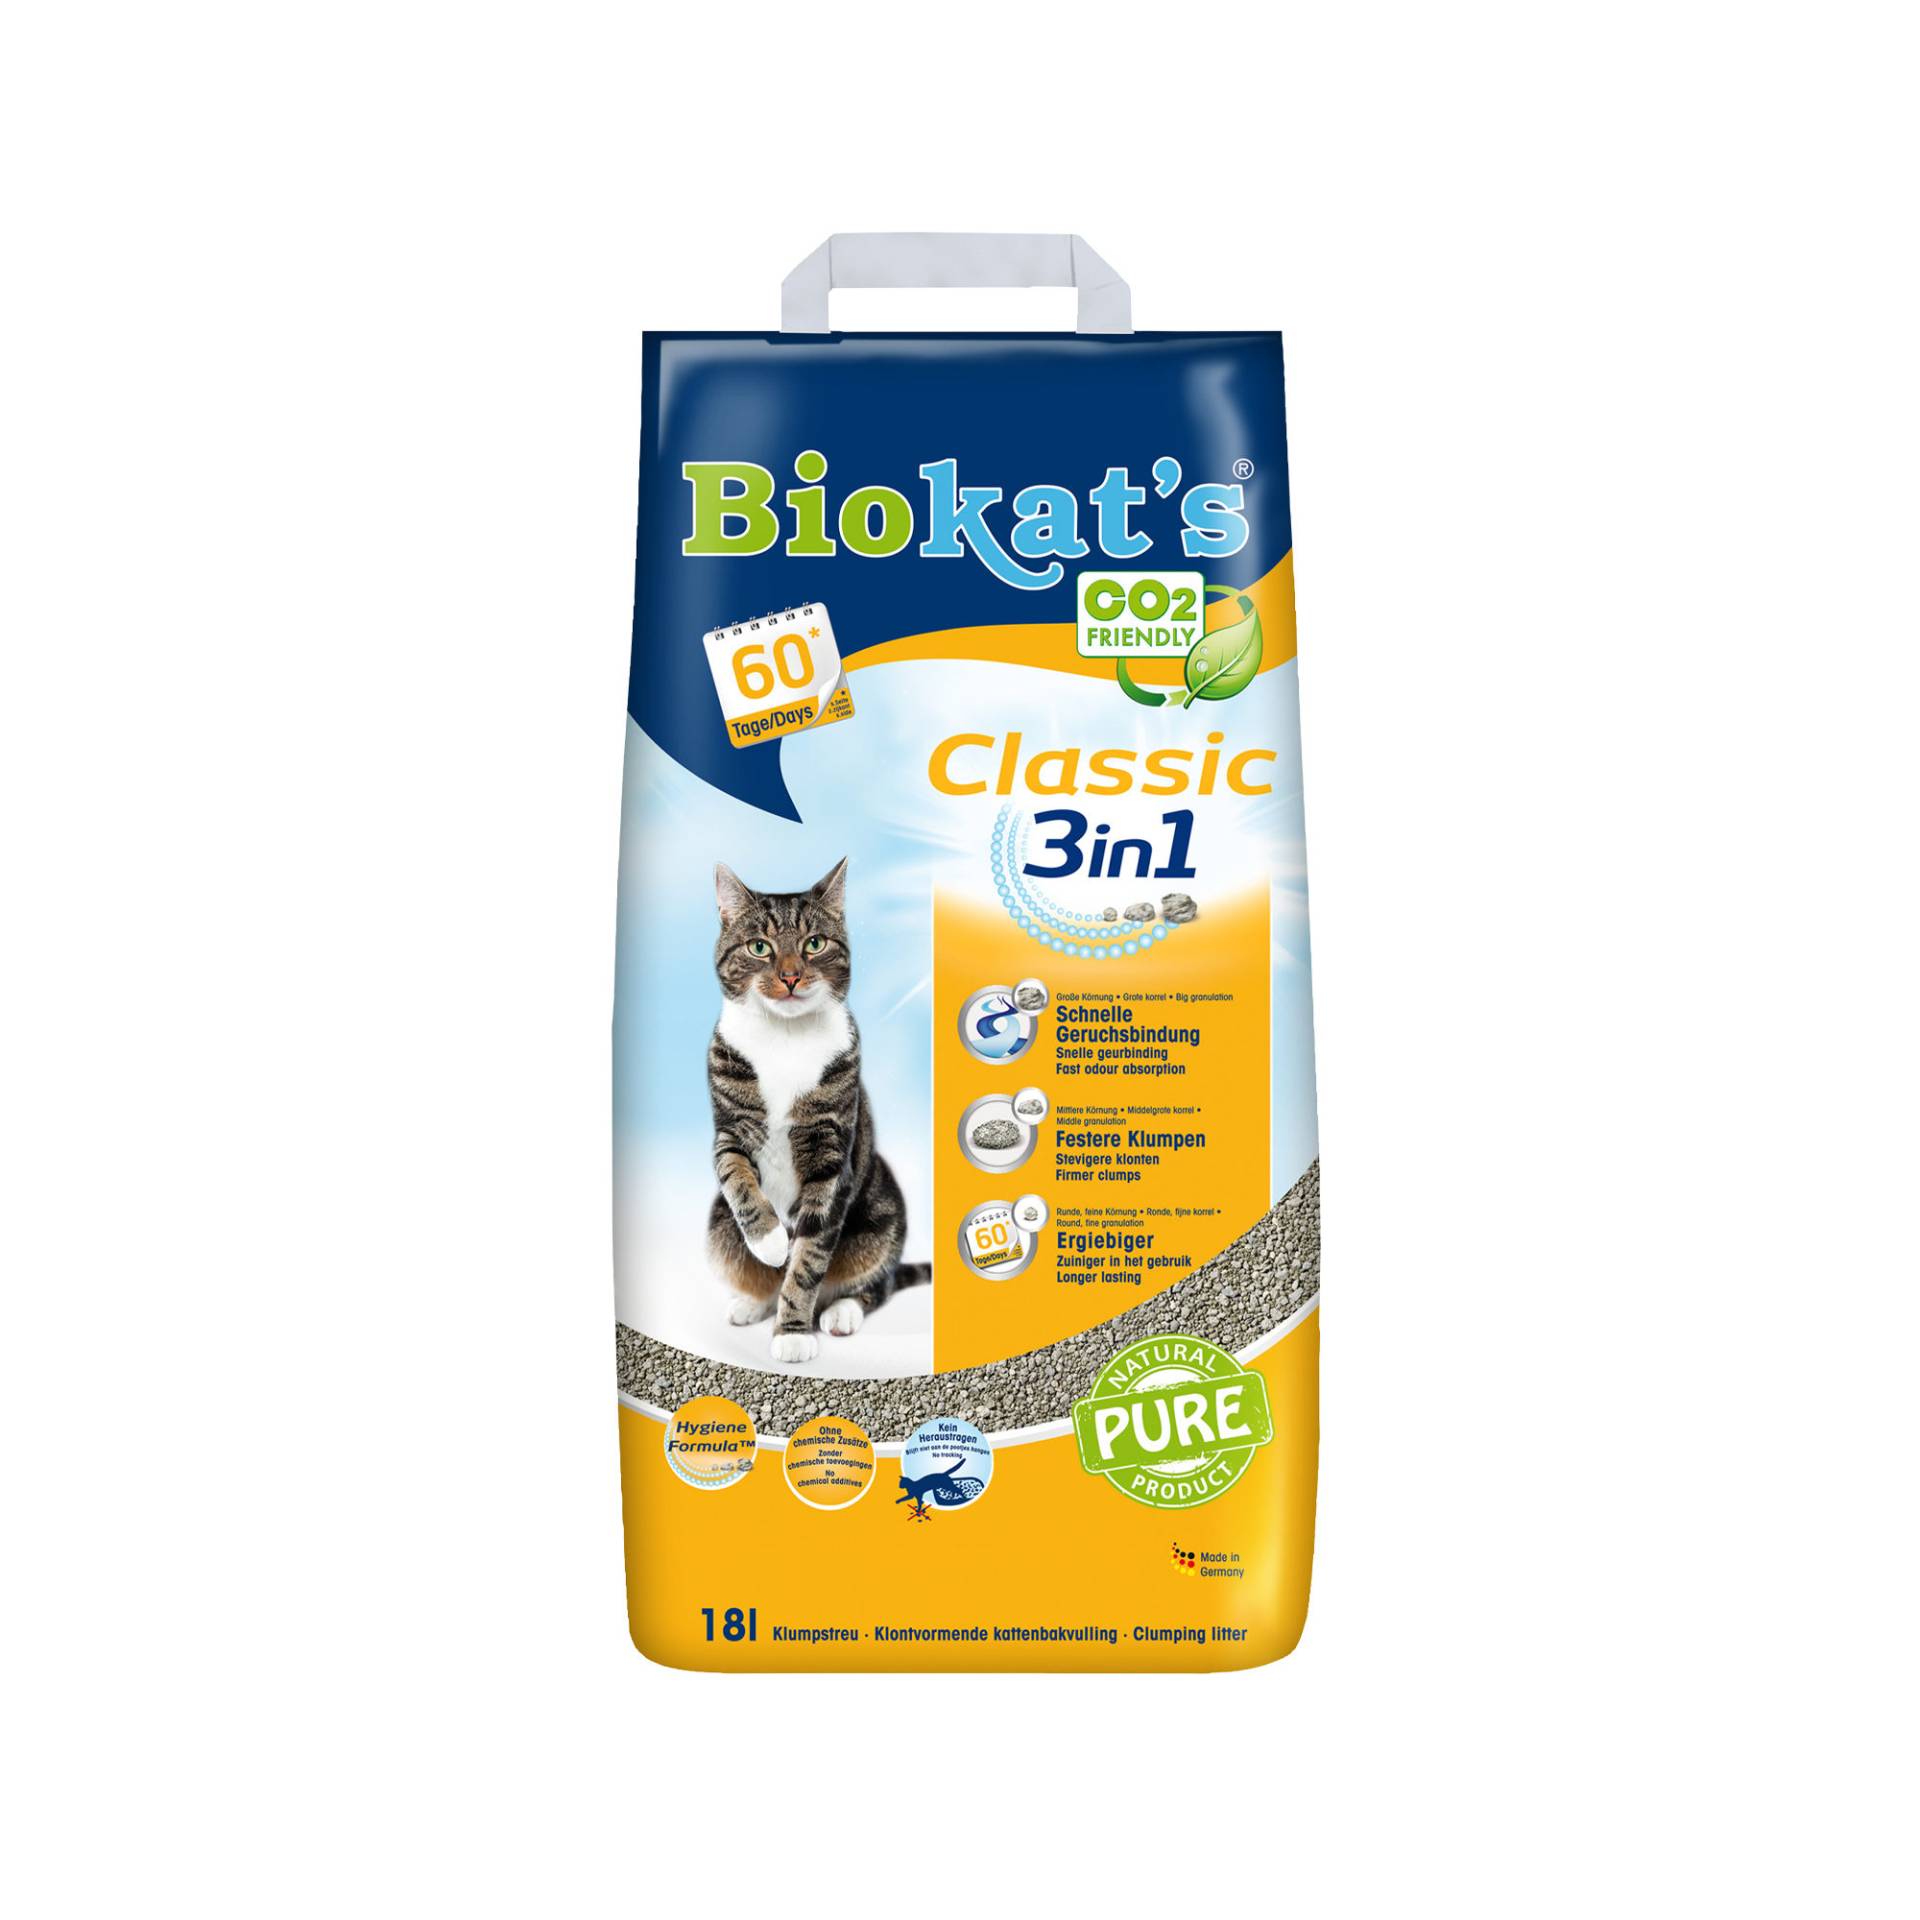 Biokat's Classic 3in1 - 10 l von Biokat